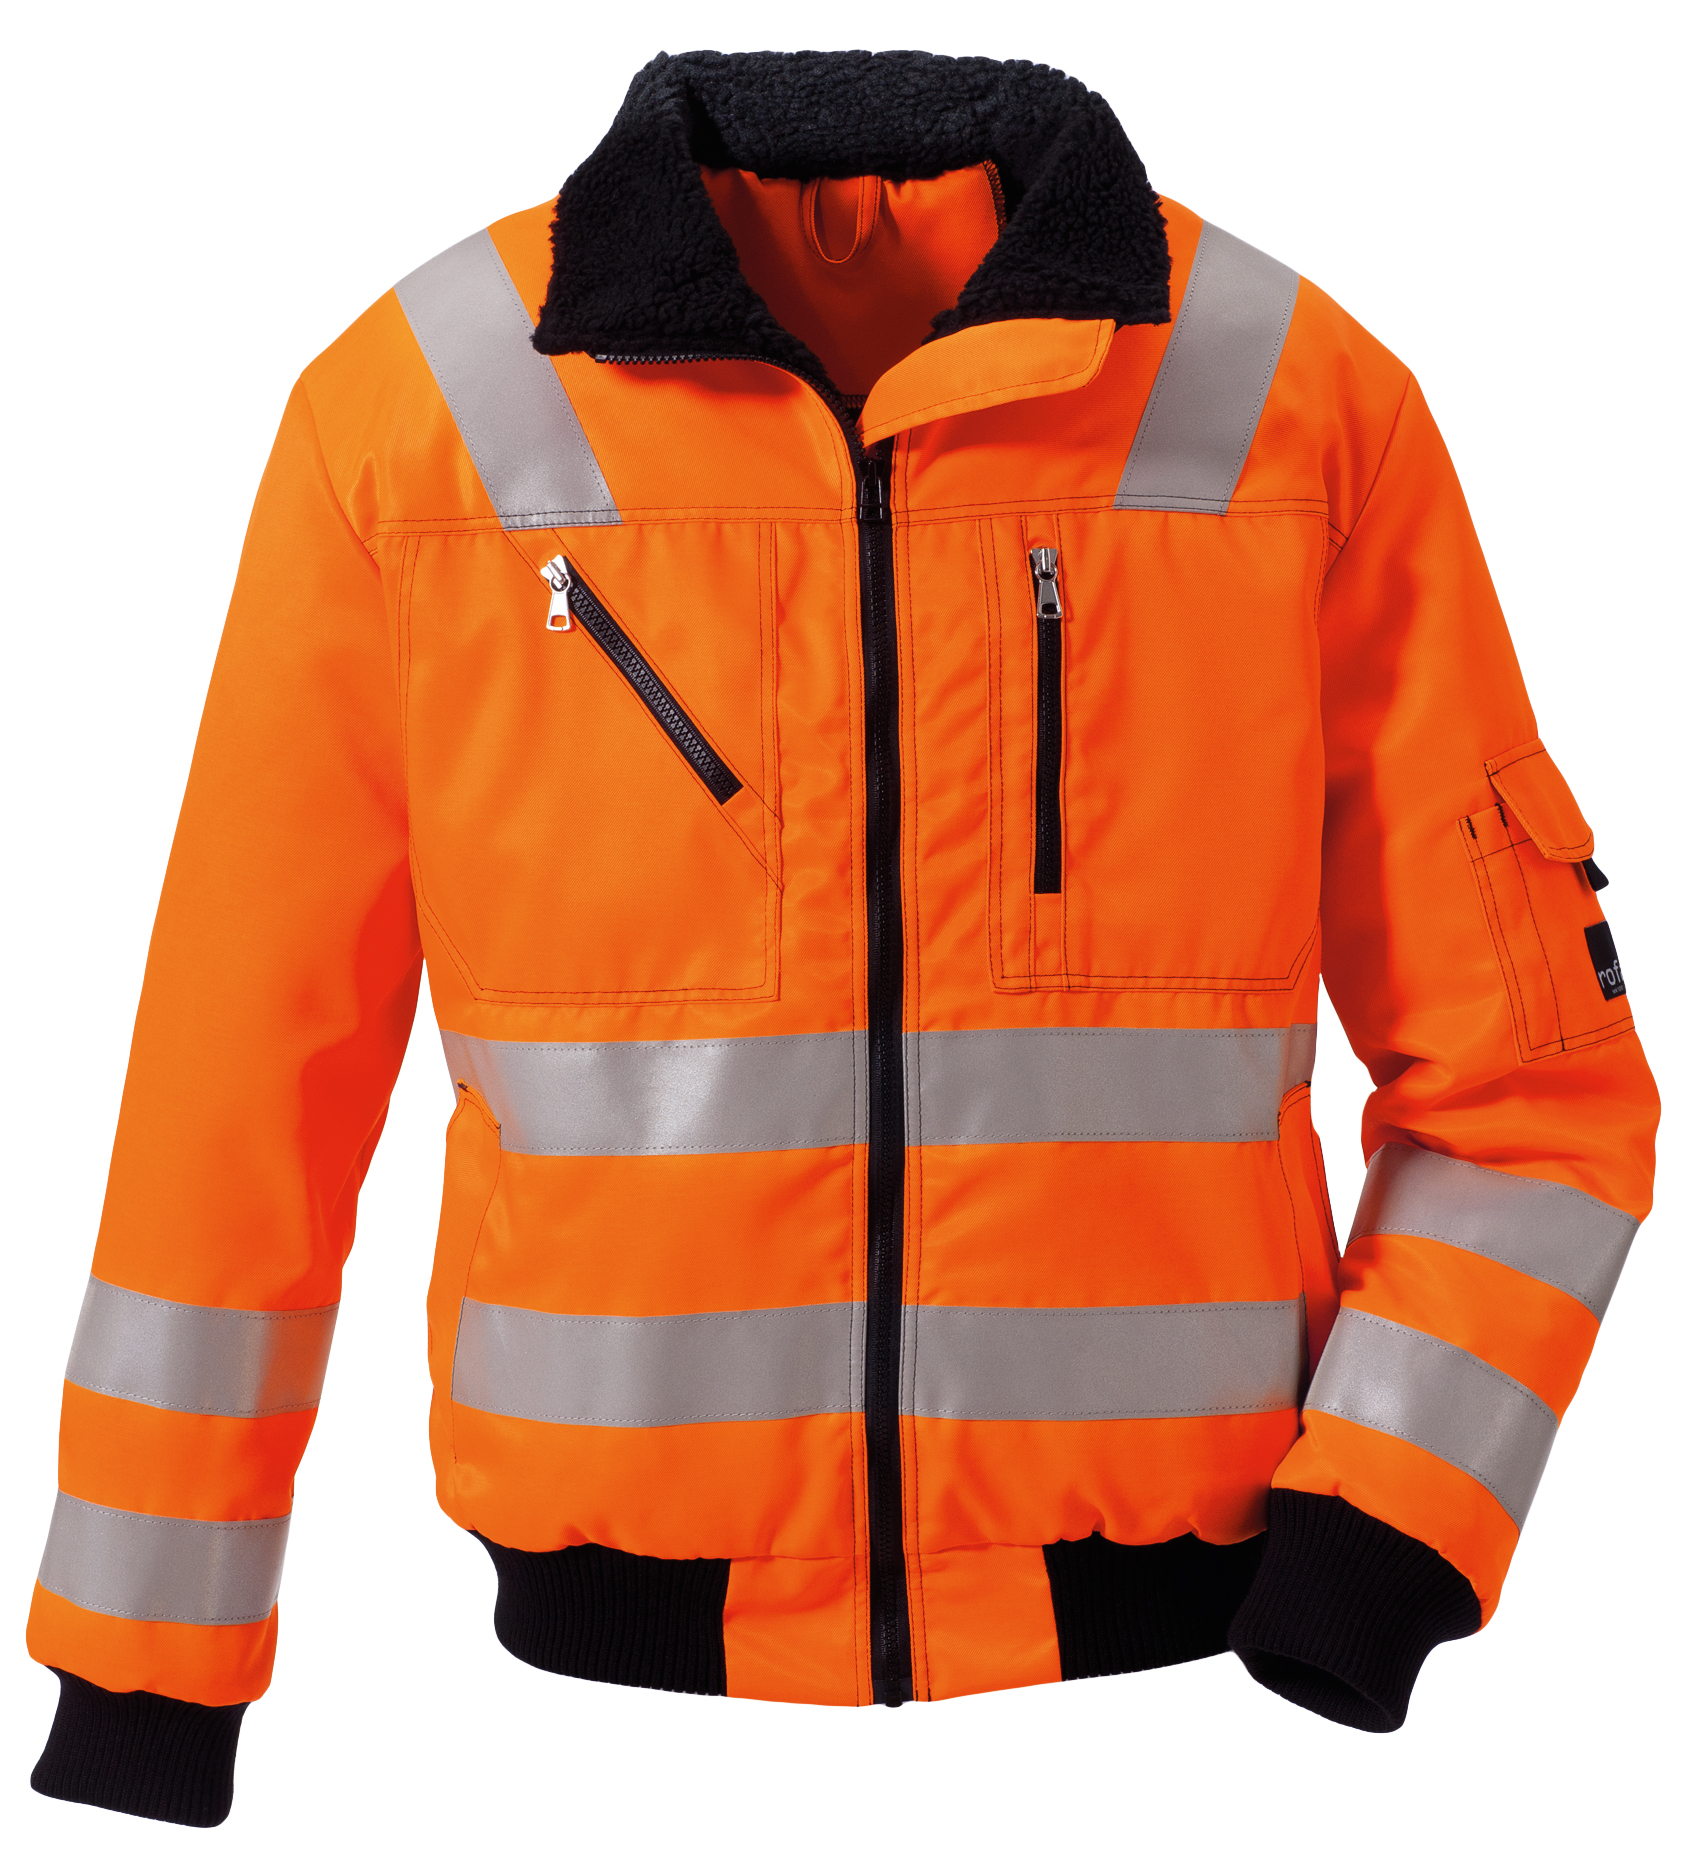 ROFA-Warnschutz, Warn-Jacke Duo Color, Polar Basic, ca. 245 g/m², leuchtorange
